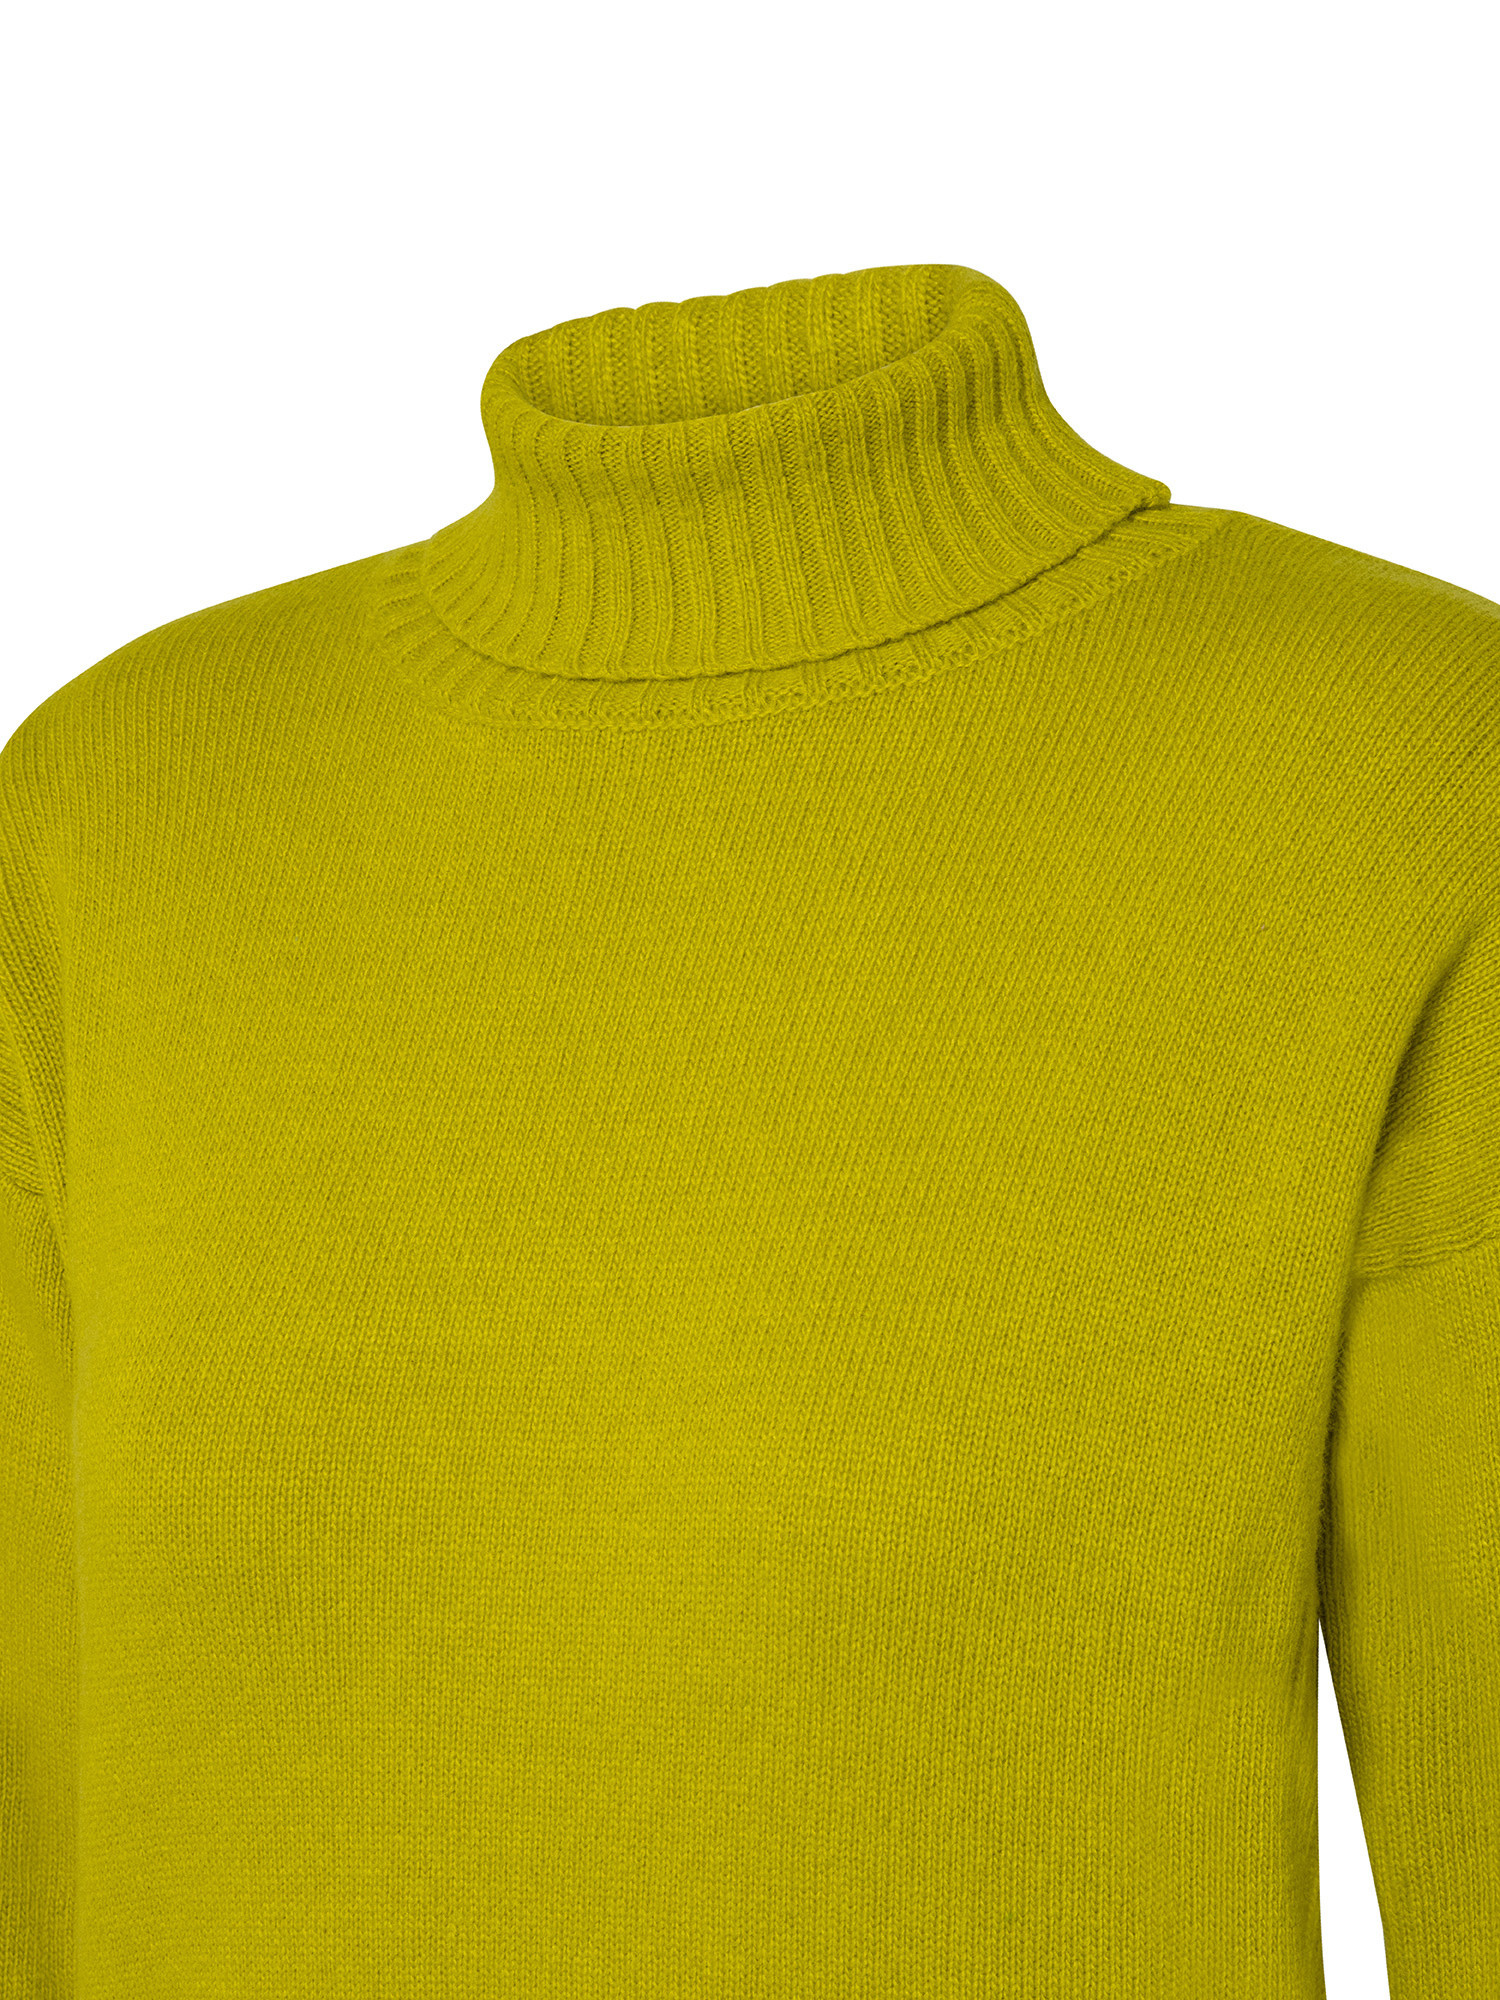 K Collection - Turtleneck sweater, Acid Green, large image number 2